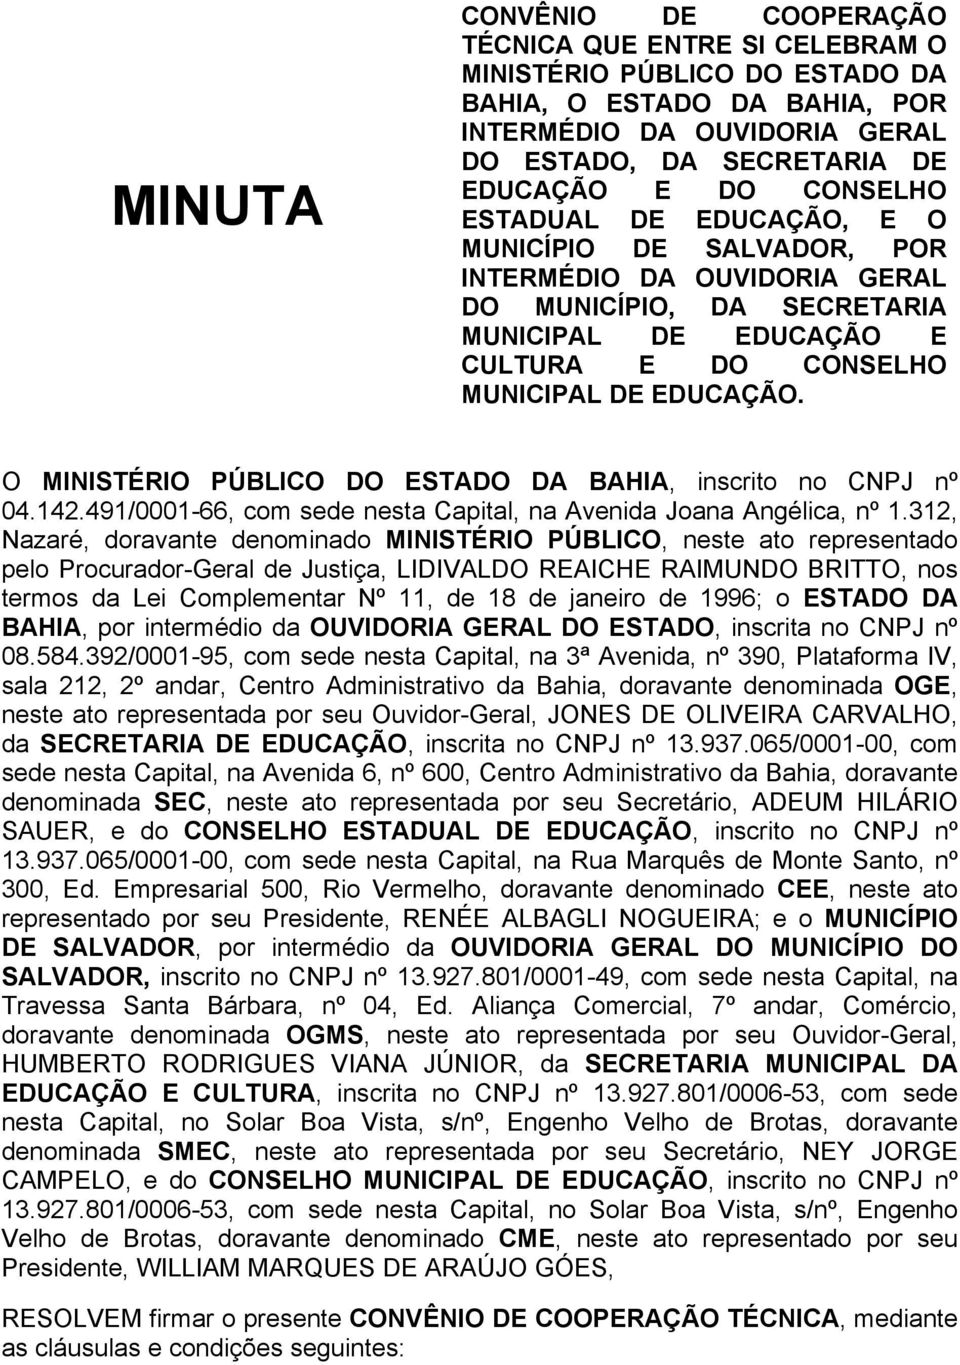 O MINISTÉRIO PÚBLICO DO ESTADO DA BAHIA, inscrito no CNPJ nº 04.142.491/0001-66, com sede nesta Capital, na Avenida Joana Angélica, nº 1.